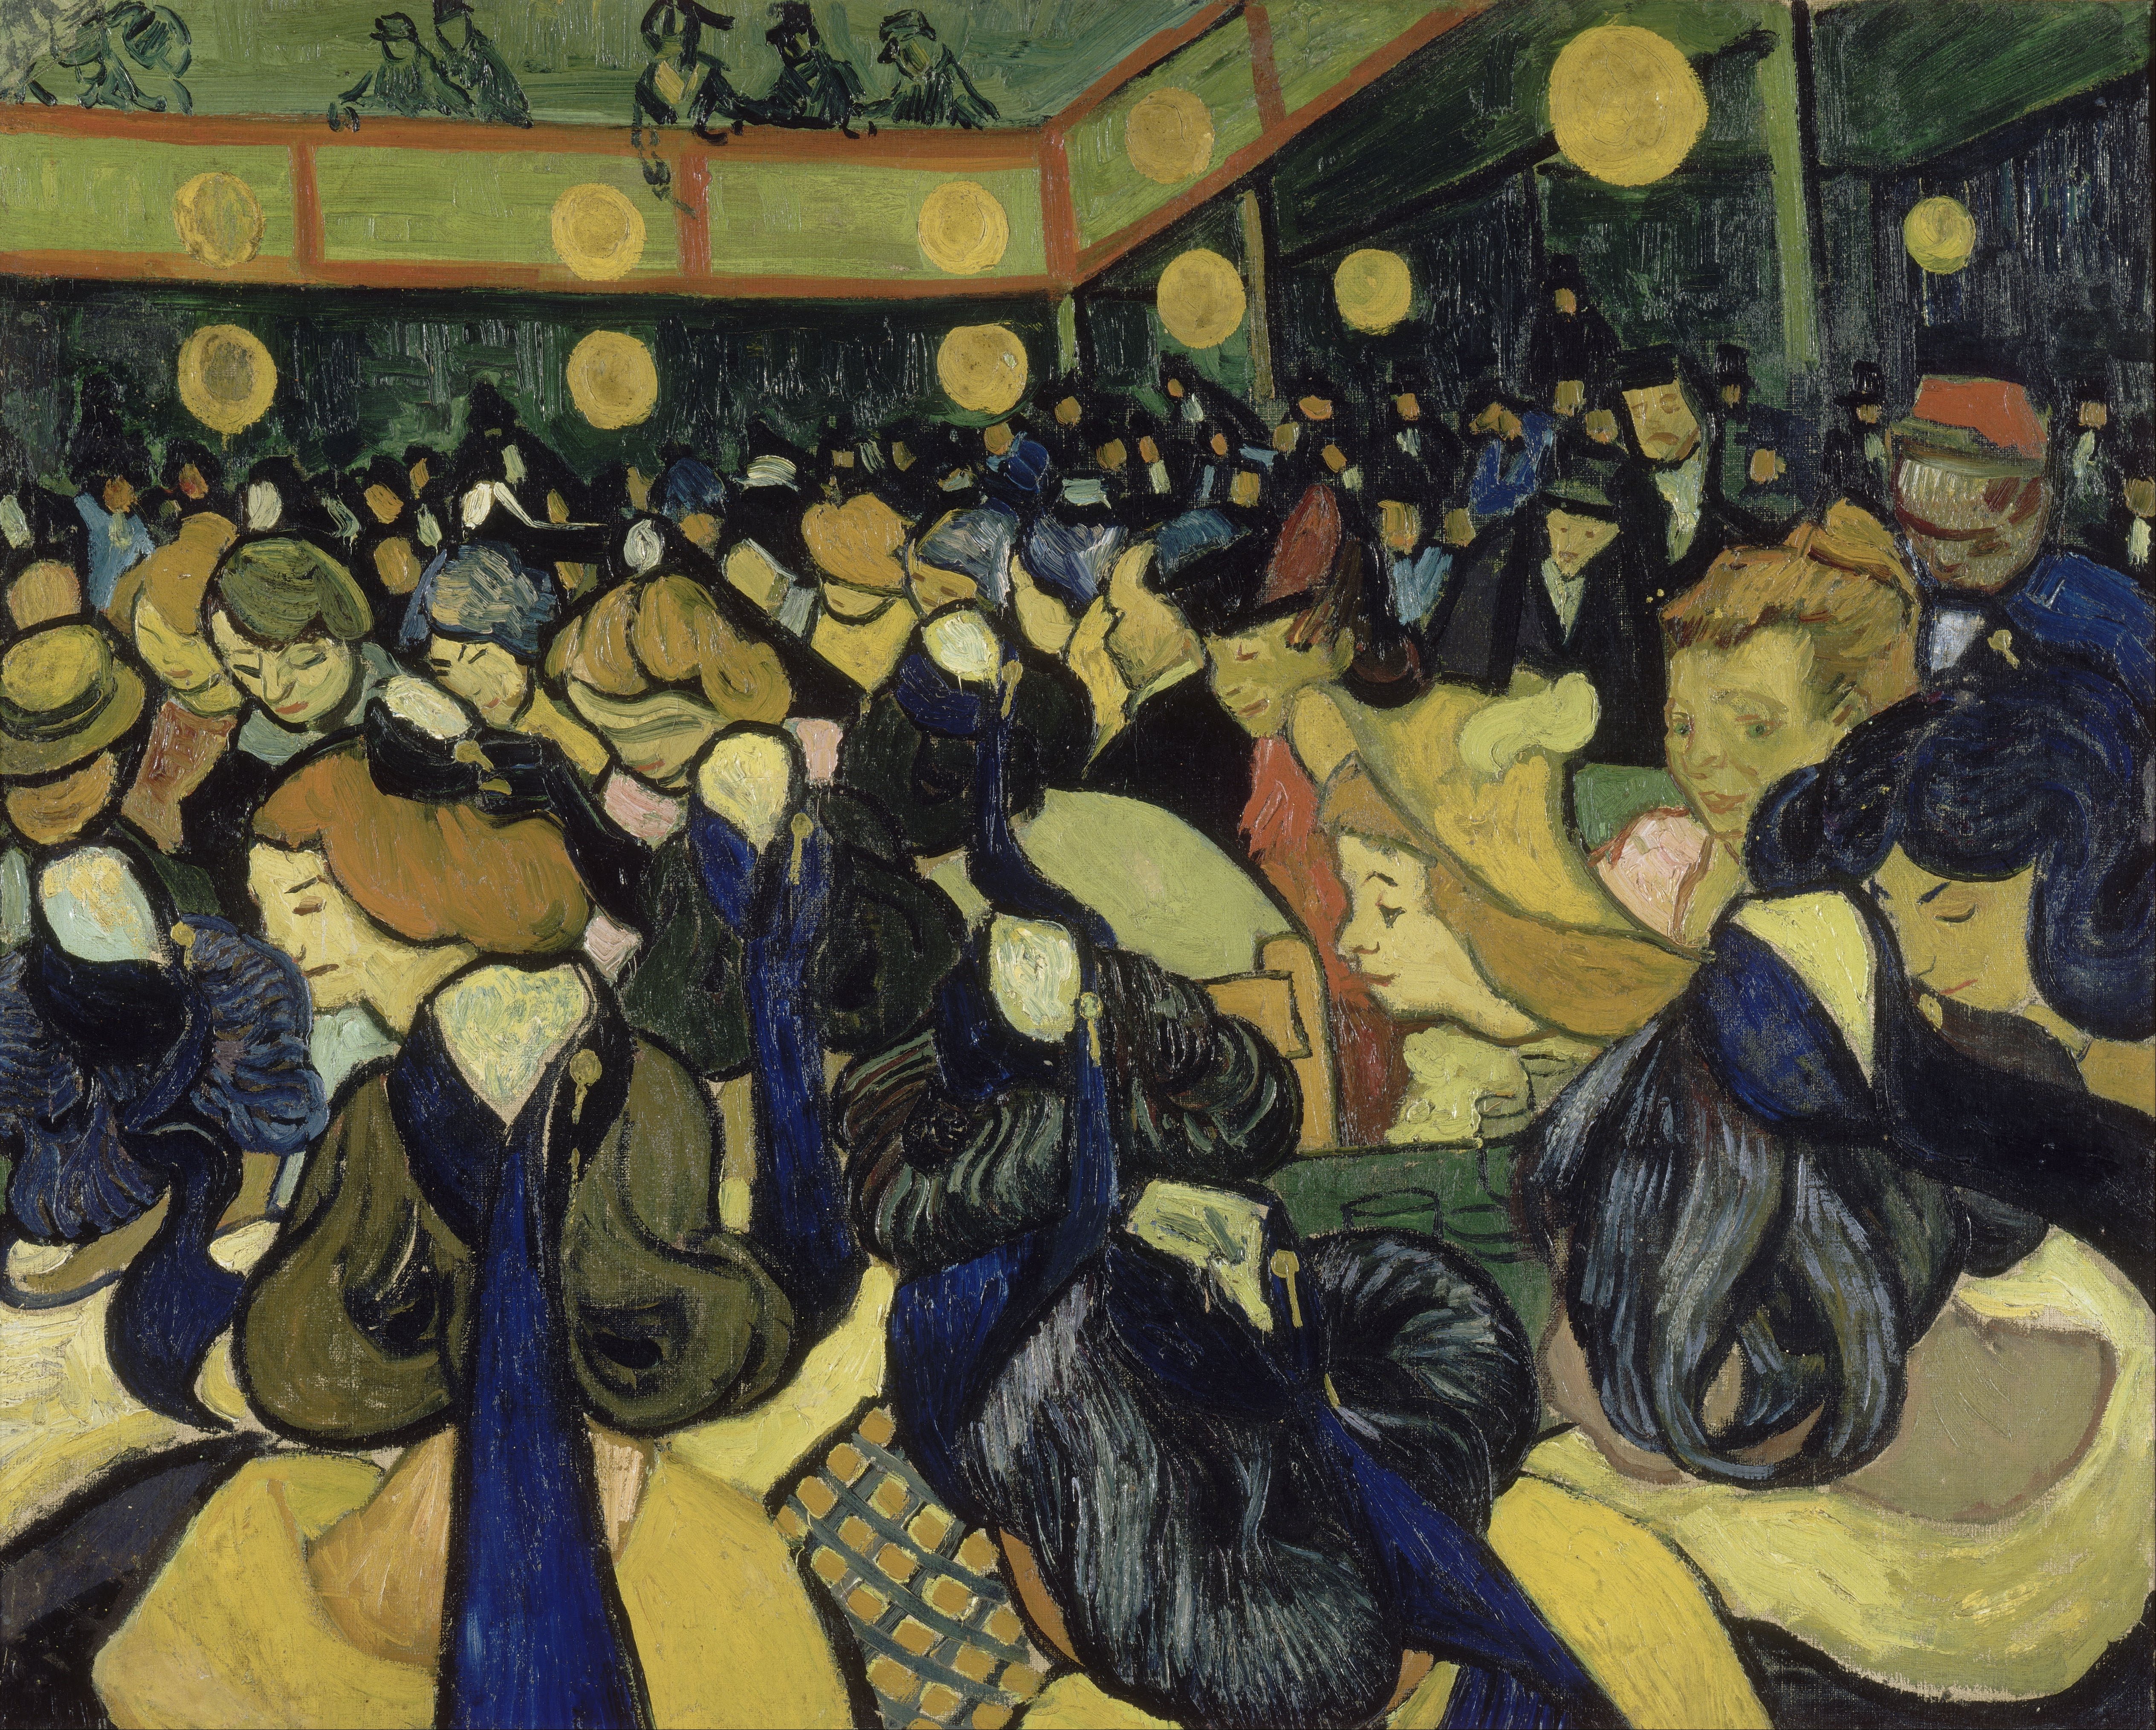 El salón de baile en Arles by Vincent van Gogh - 1888 - 65 x 81 cm Musée d'Orsay